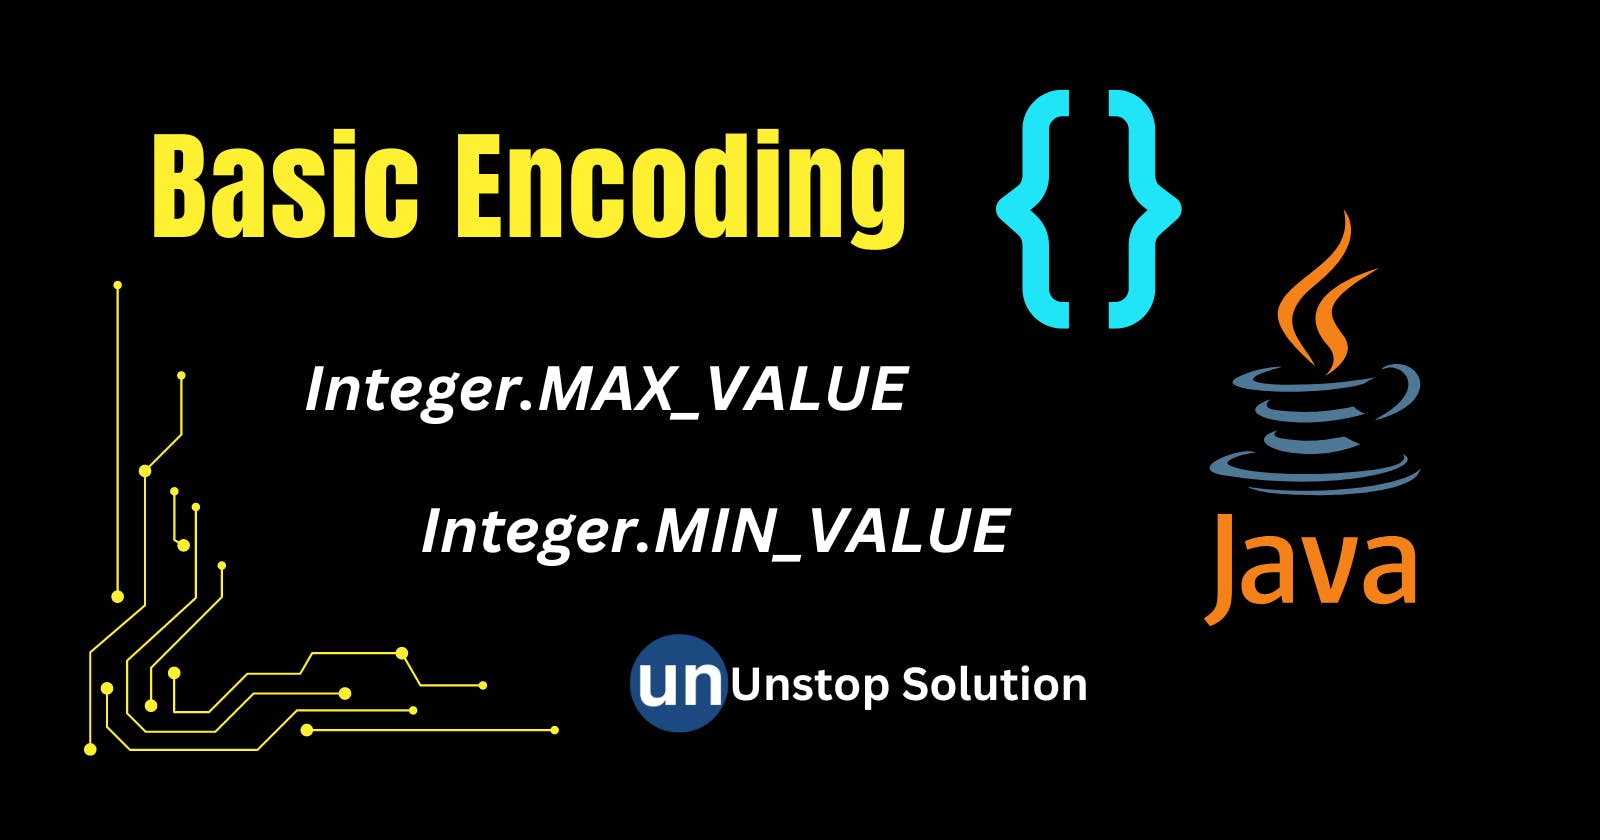 Basic Encoding - Unstop Solution (Java)